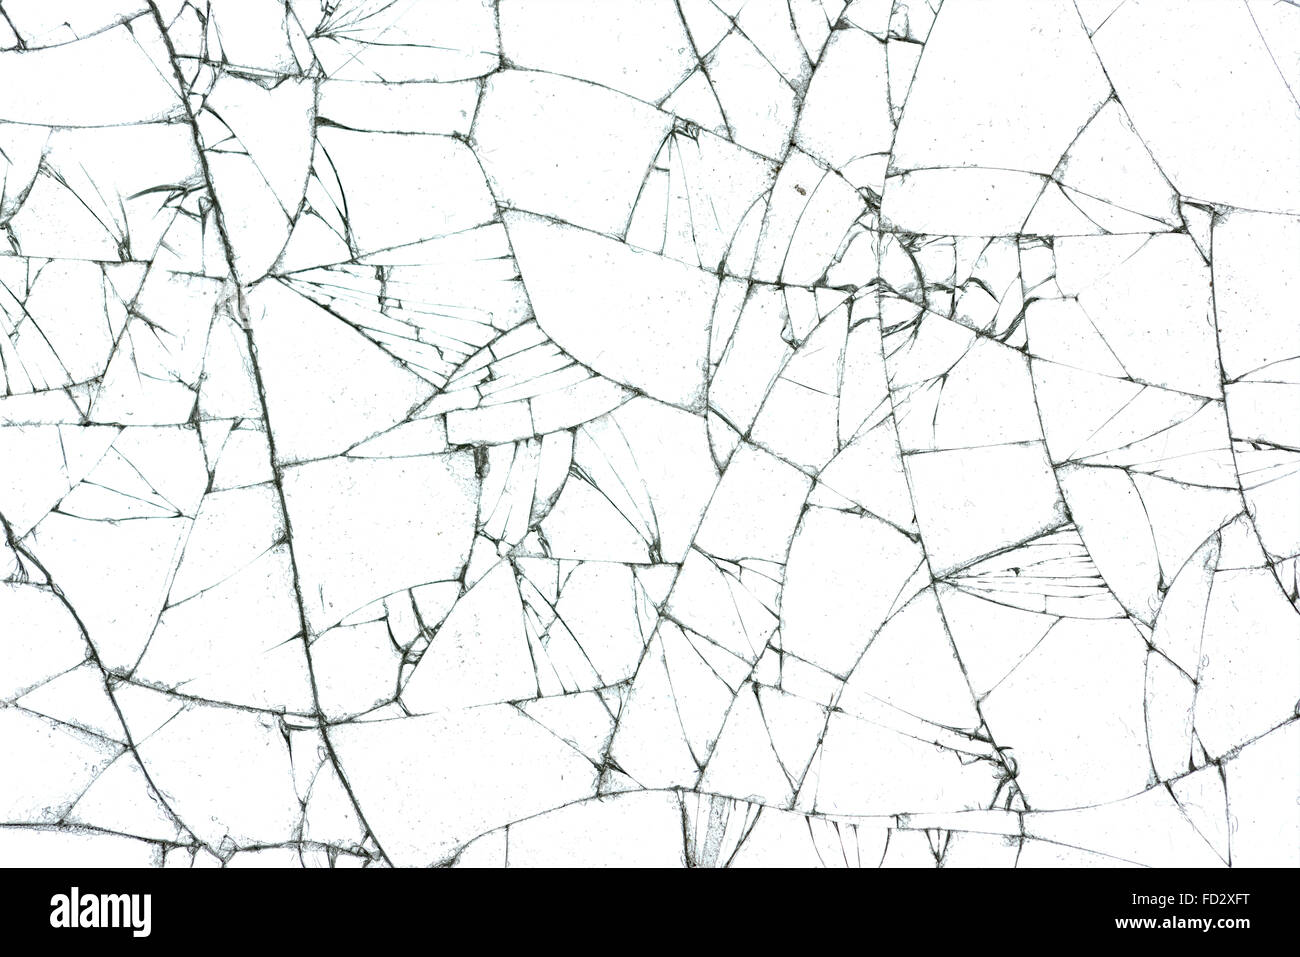 broken glass texture vector